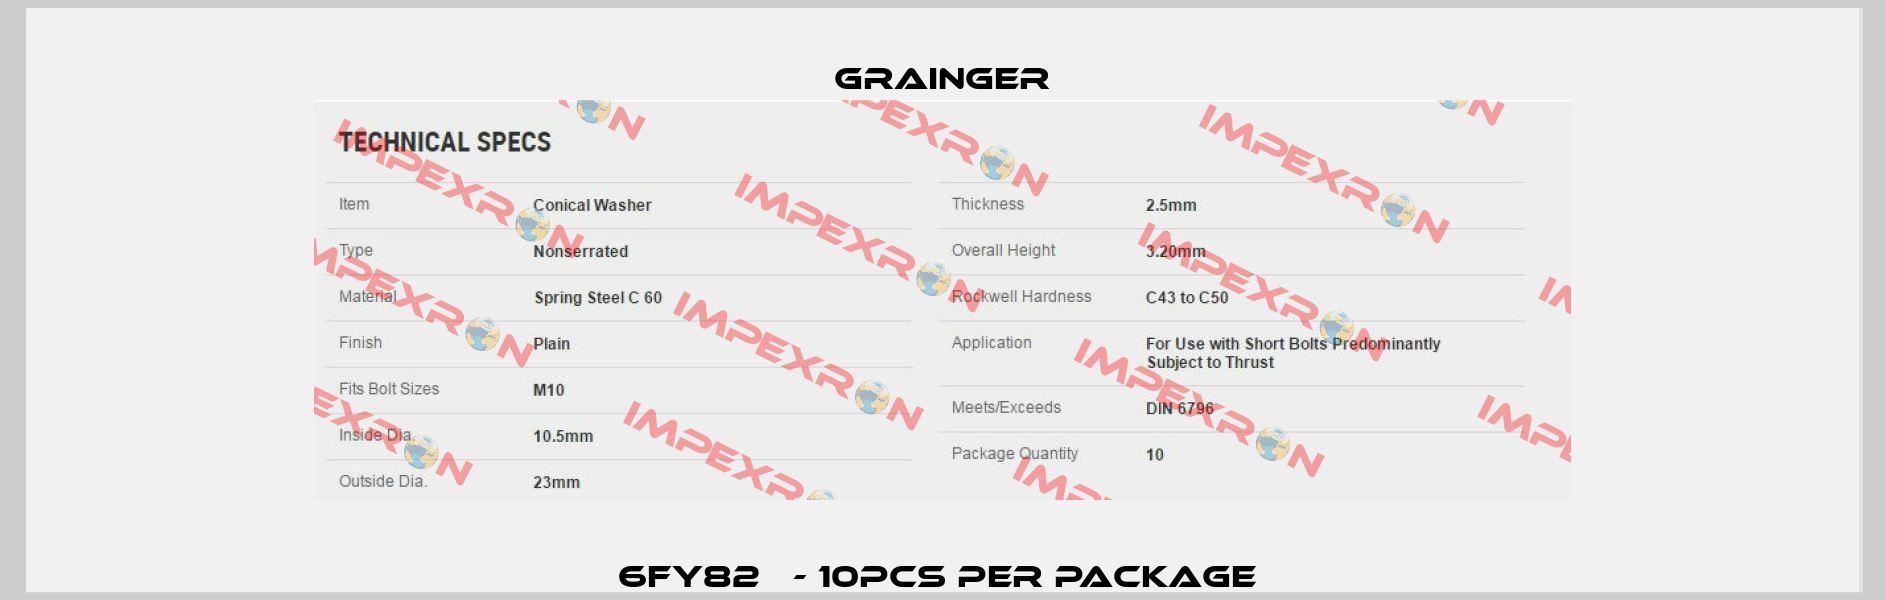 6FY82   - 10pcs per package  Grainger